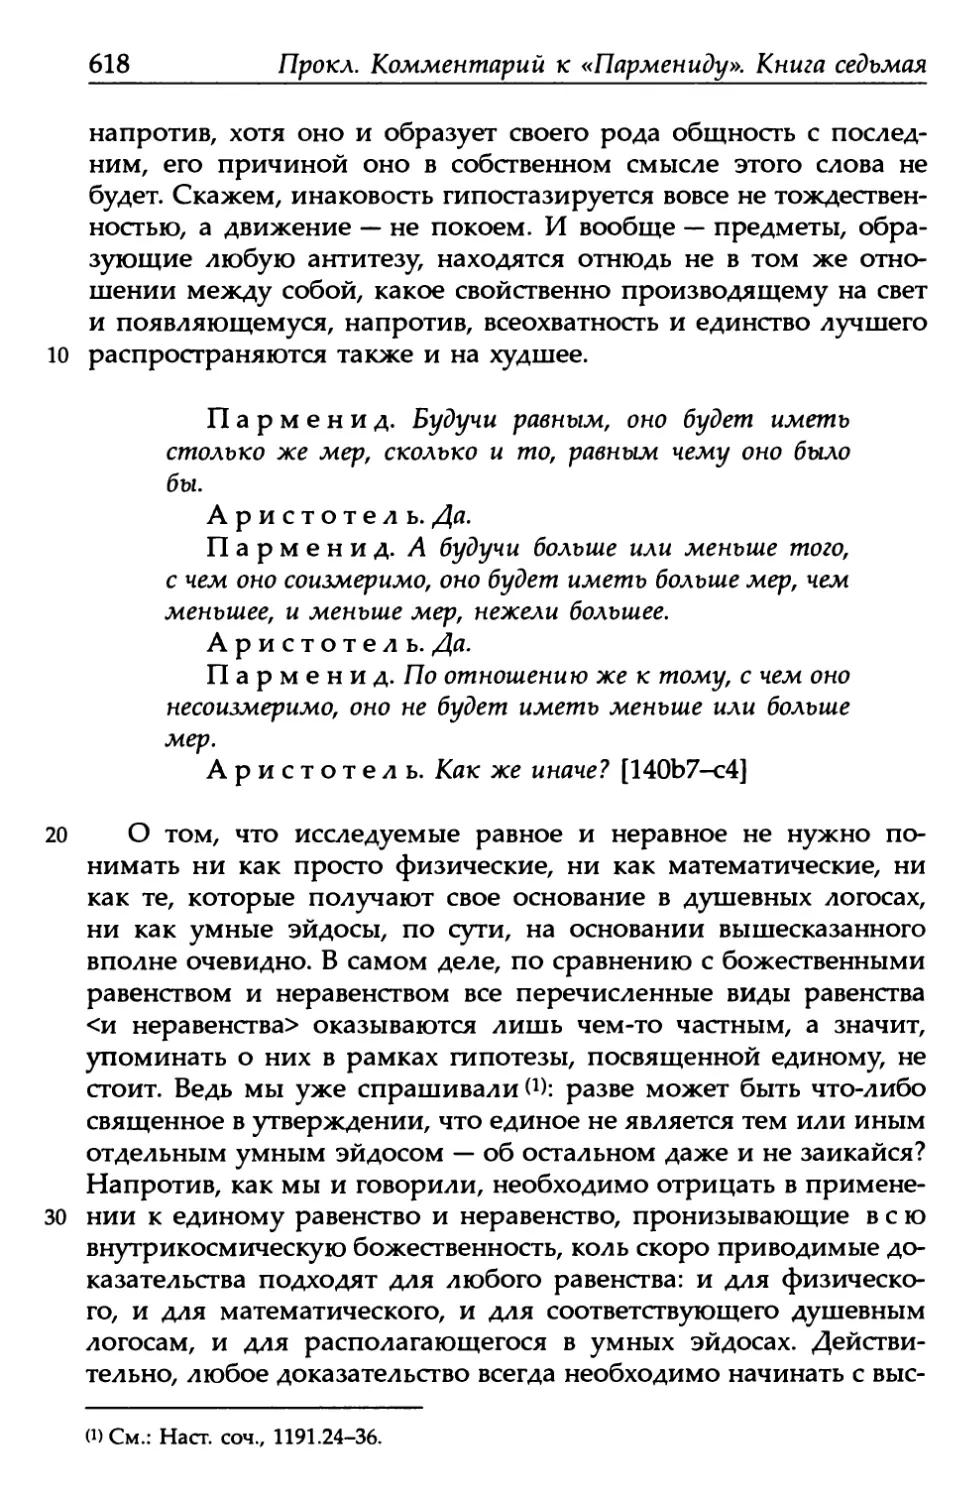 «Парменид», 140b7-с4